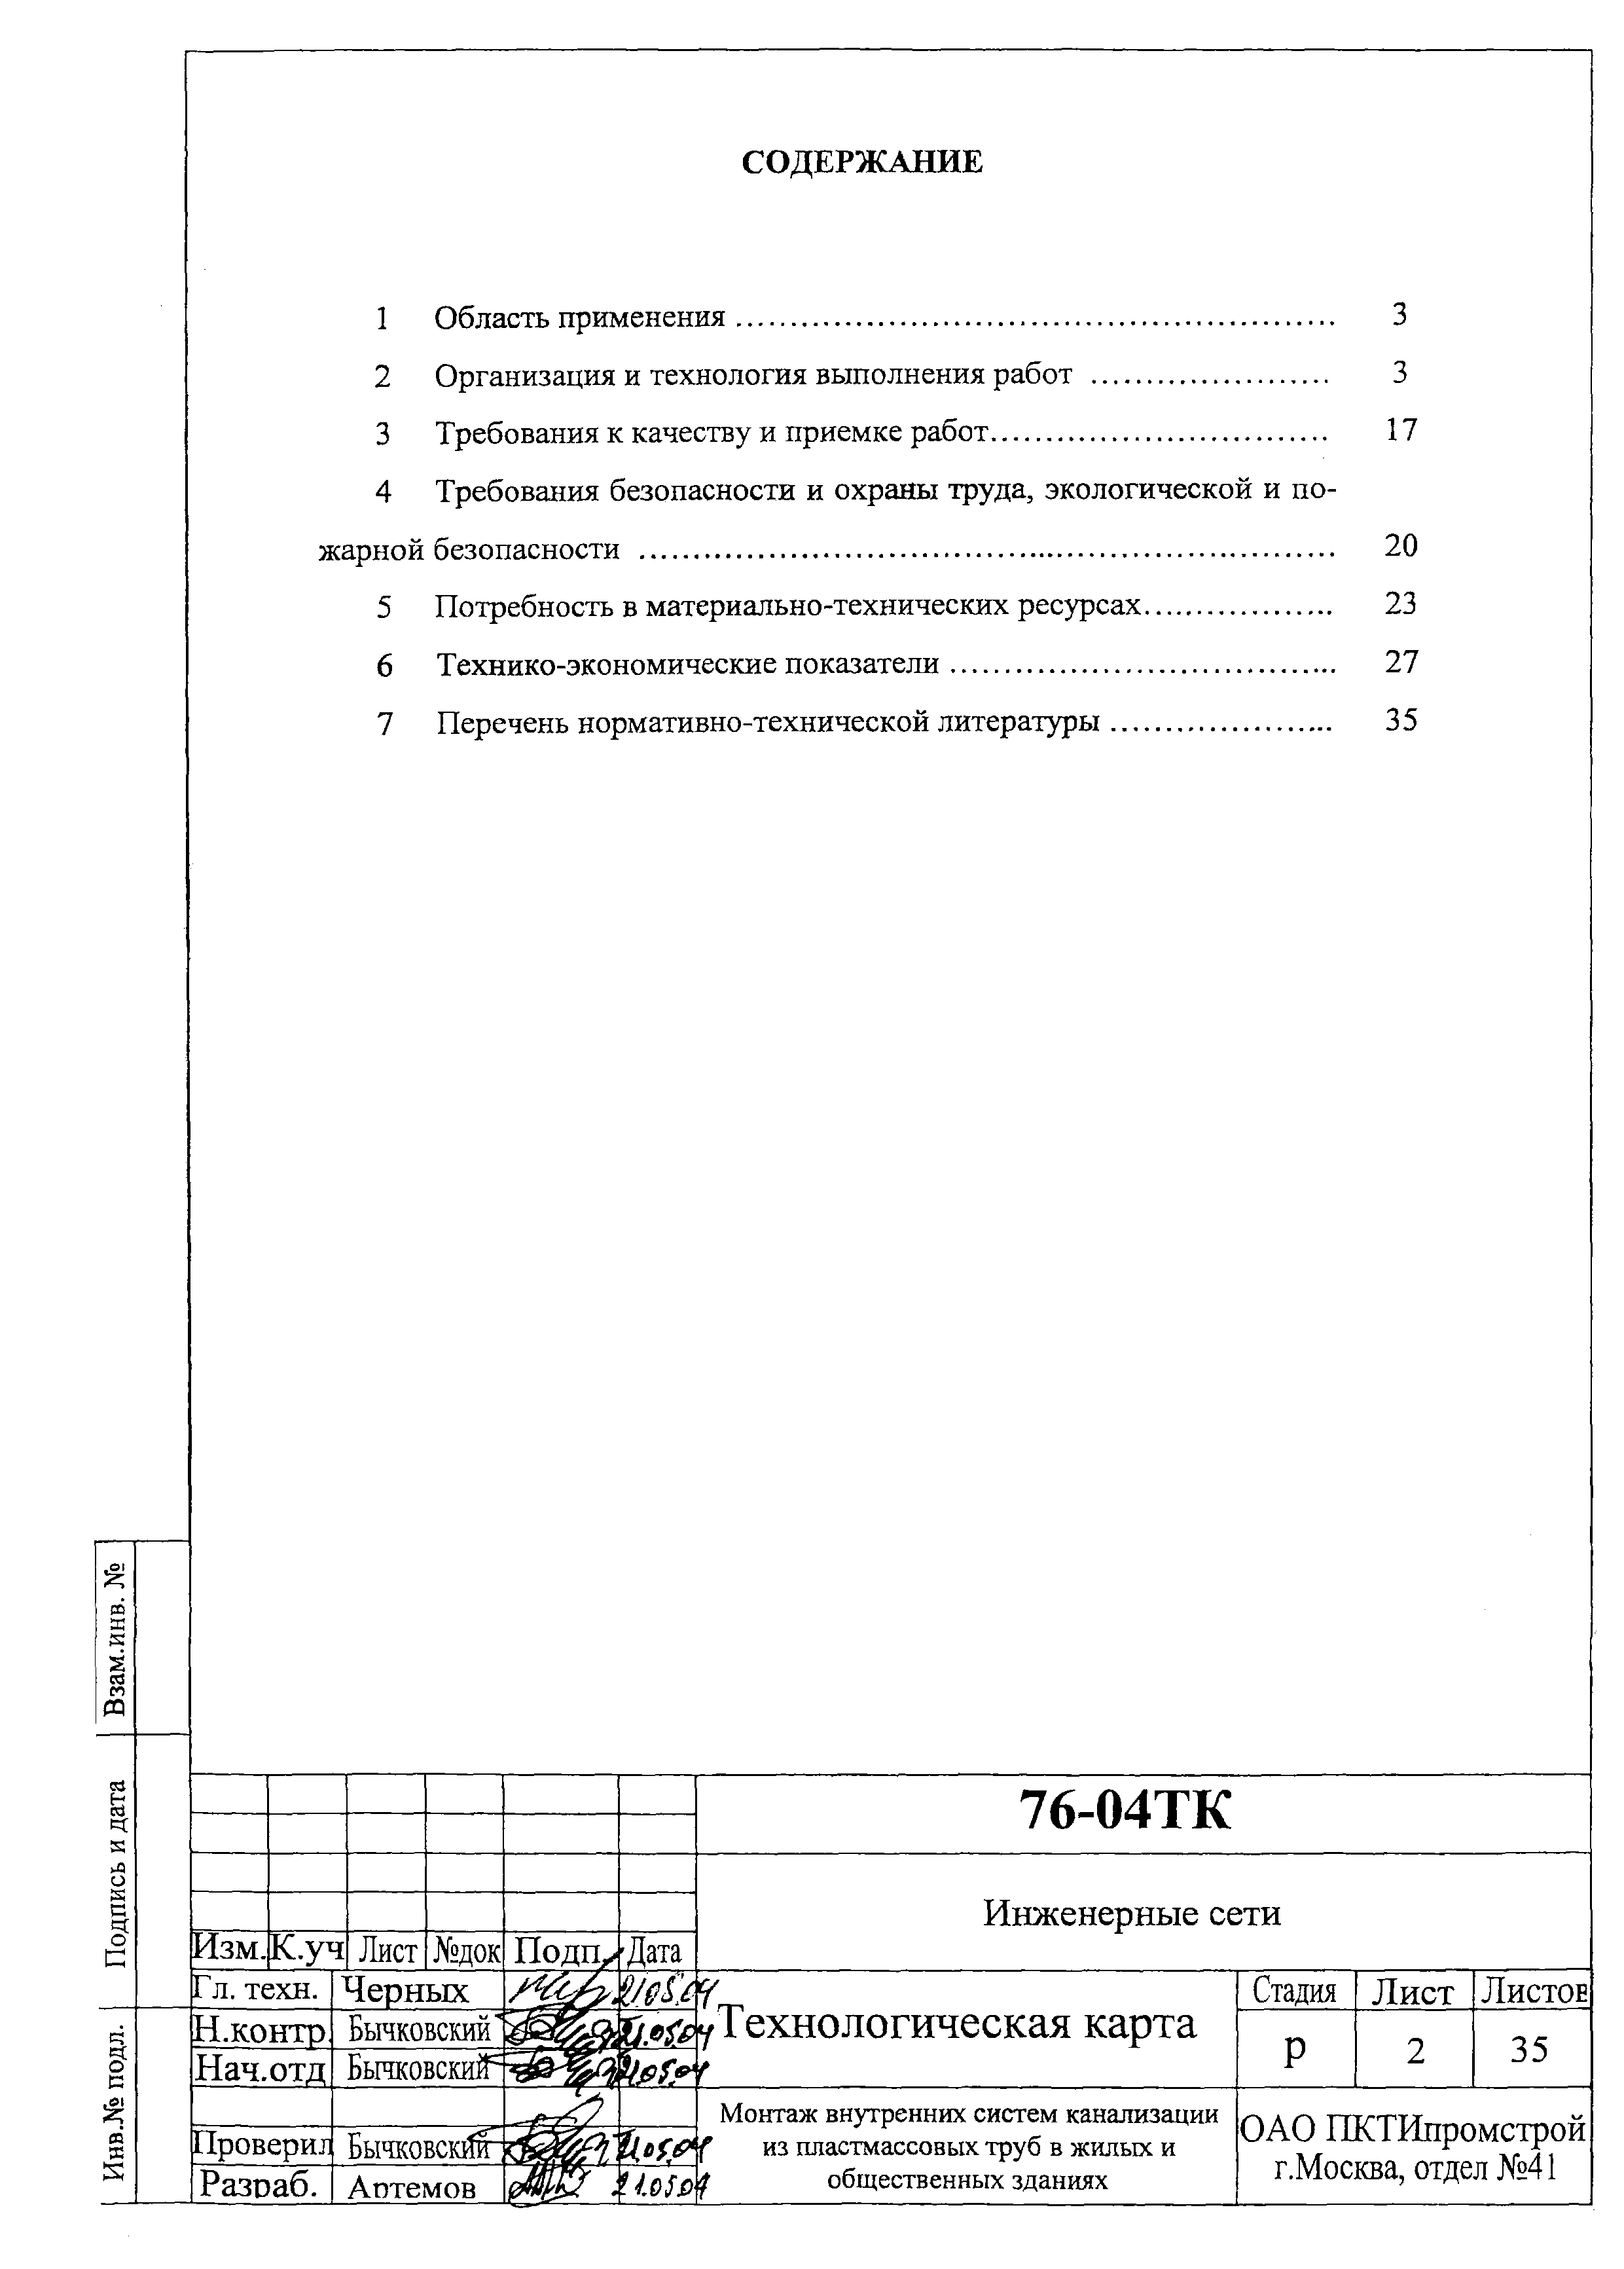 Технологическая карта 76-04 ТК